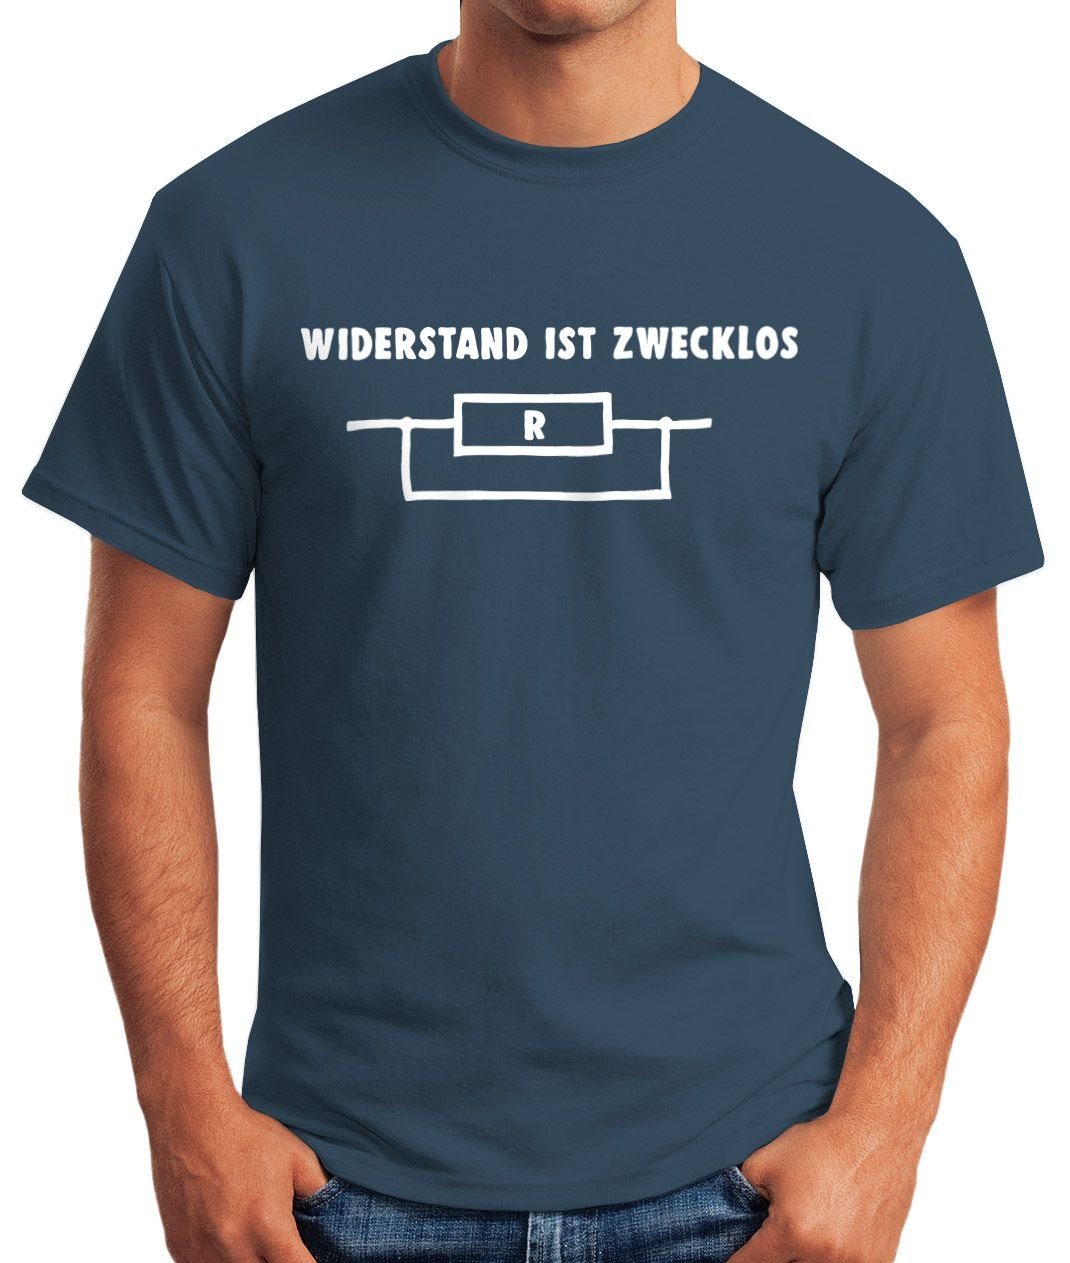 MoonWorks Print-Shirt Moonworks® ist Shirt zwecklos Herren mit T-Shirt Print blau Widerstand